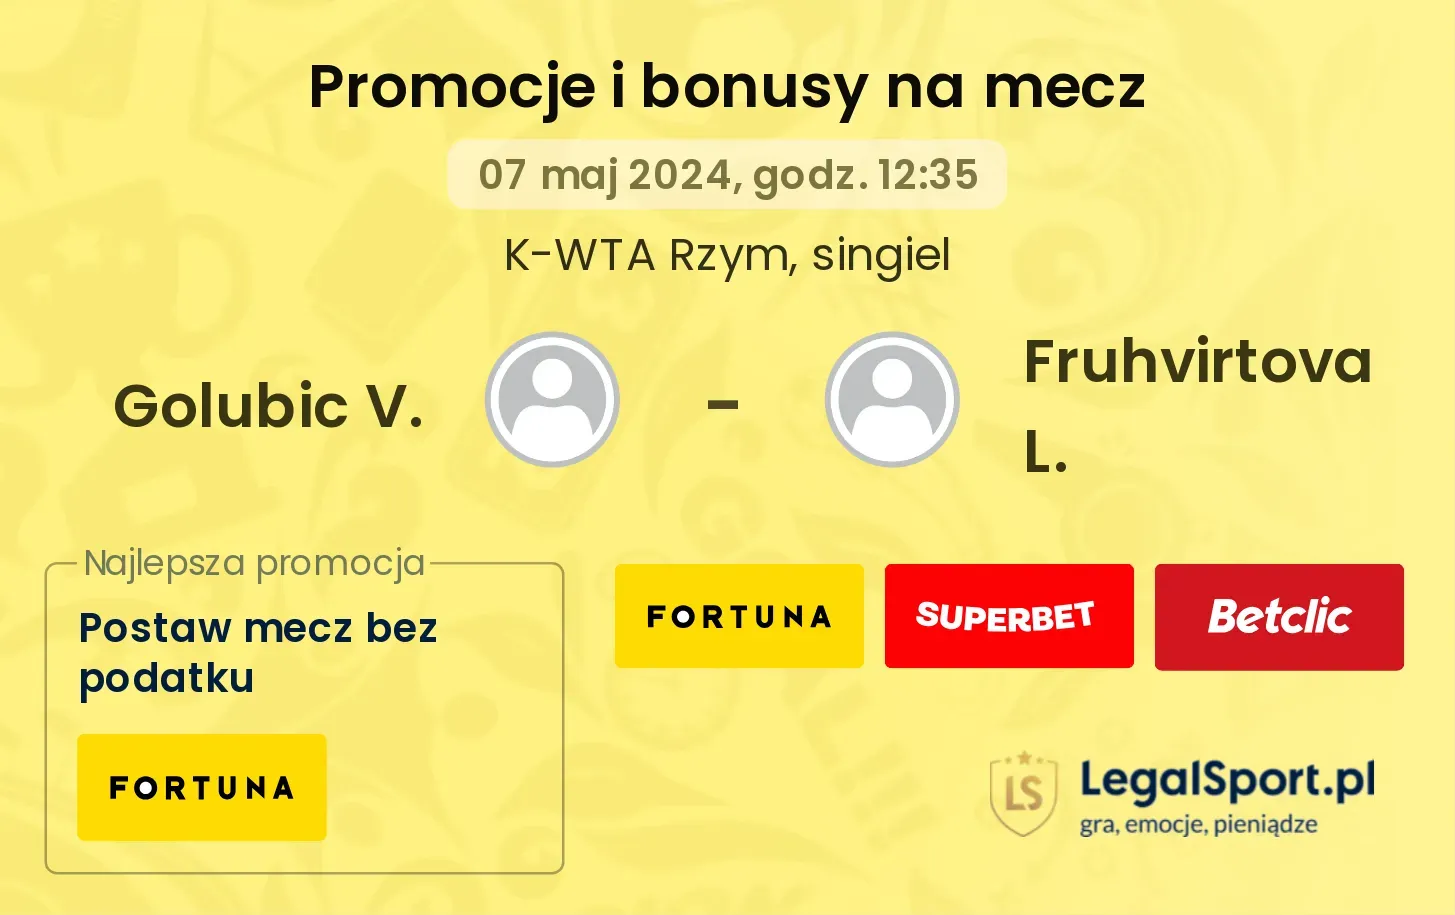 Golubic V. - Fruhvirtova L. promocje bonusy na mecz